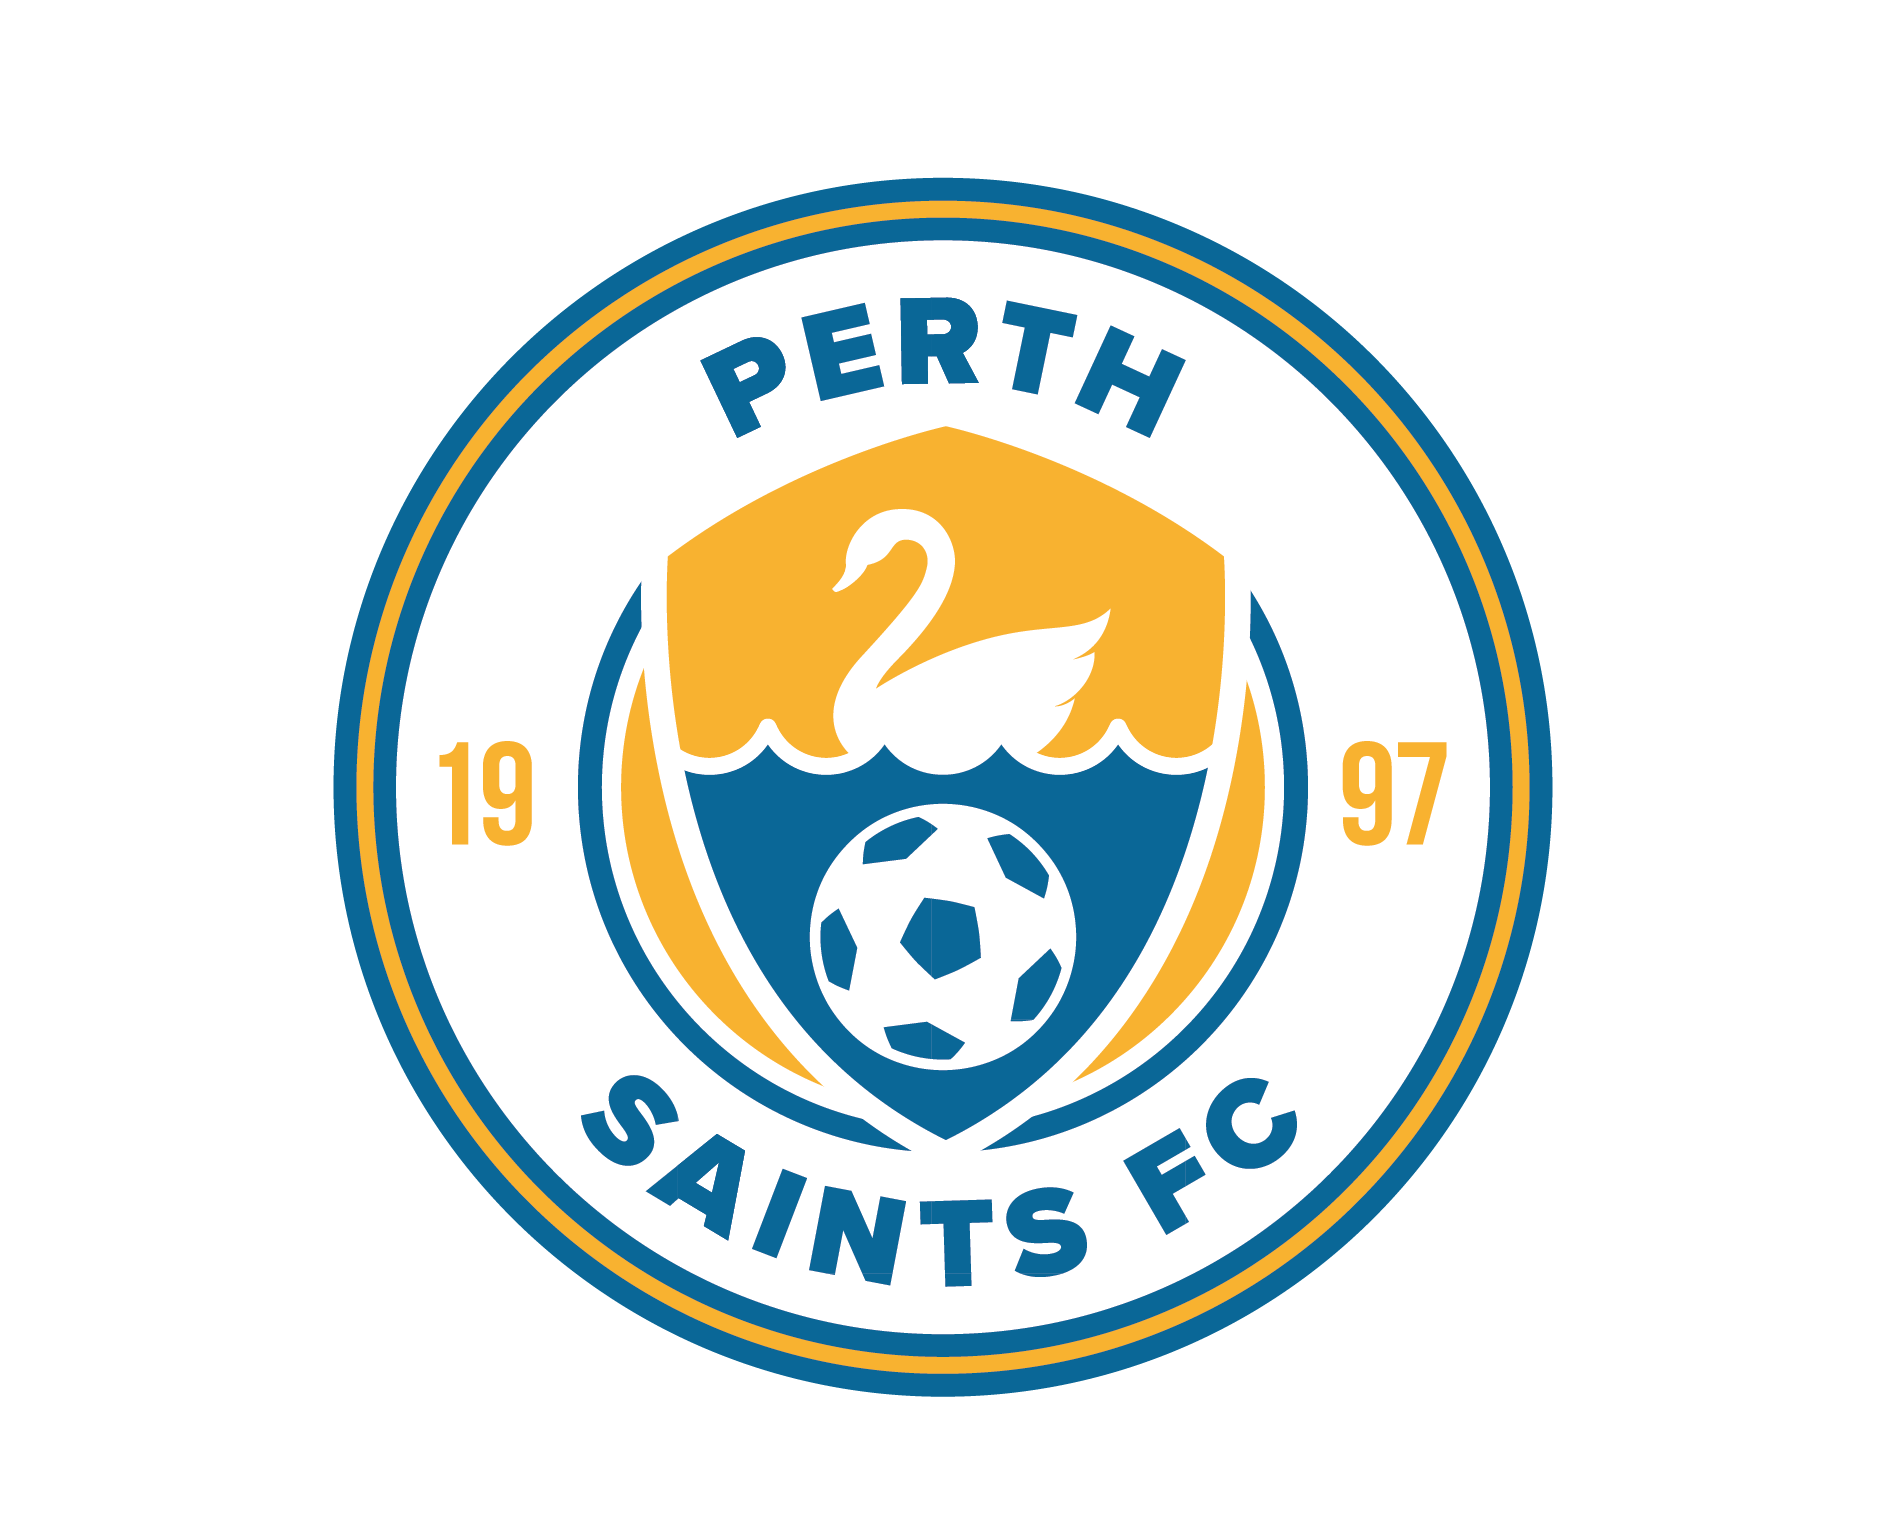 Squadi App — Perth Saints Football Club